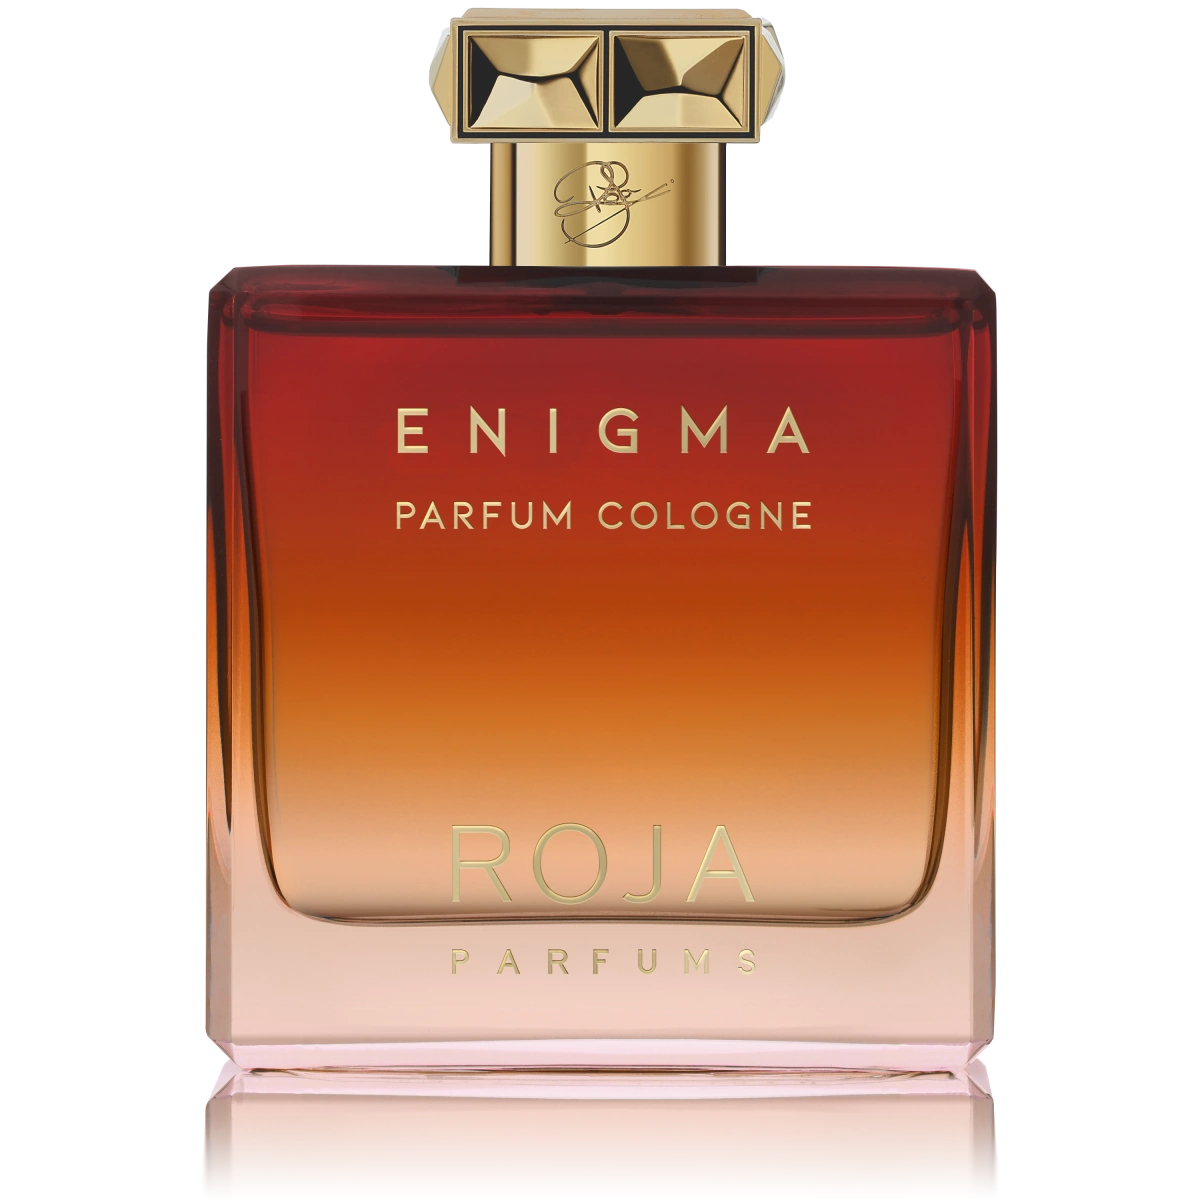 enigma-pour-homme-parfum-cologne-roja.webp